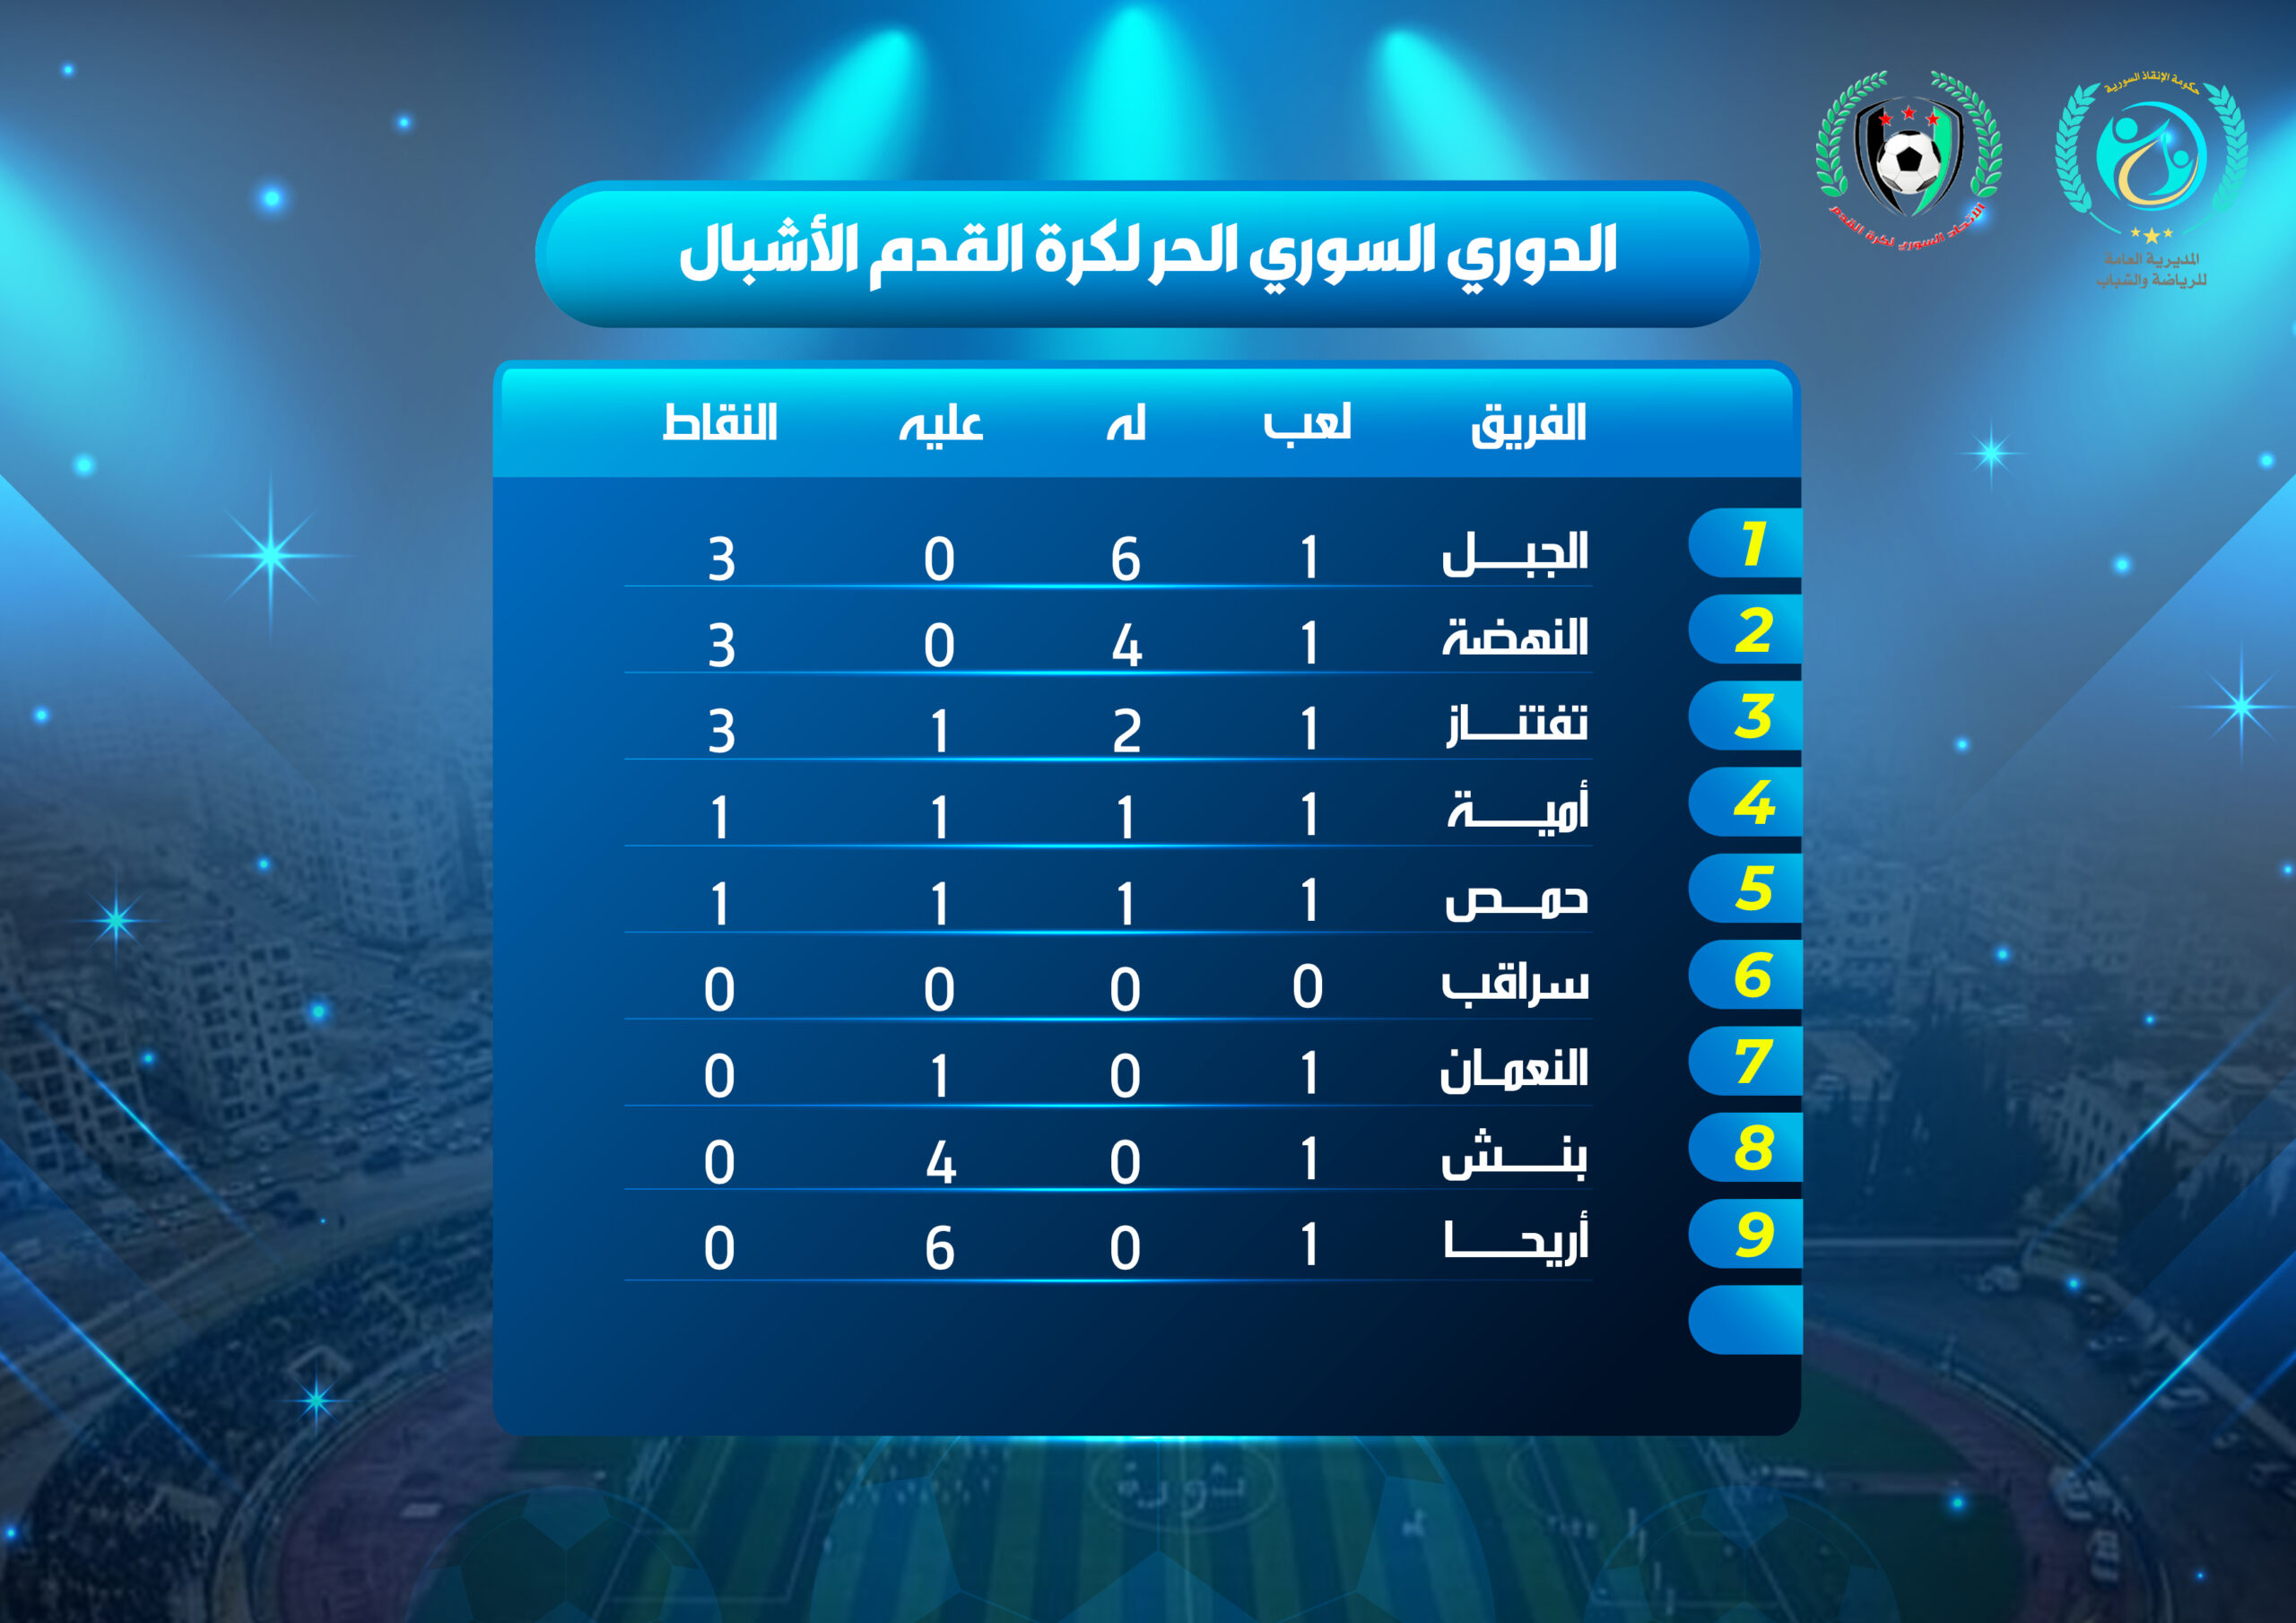 جدول ترتيب الأندية بعد انتهاء الجولة الأولى من بطولة دوري الأشبال لكرة القدم.